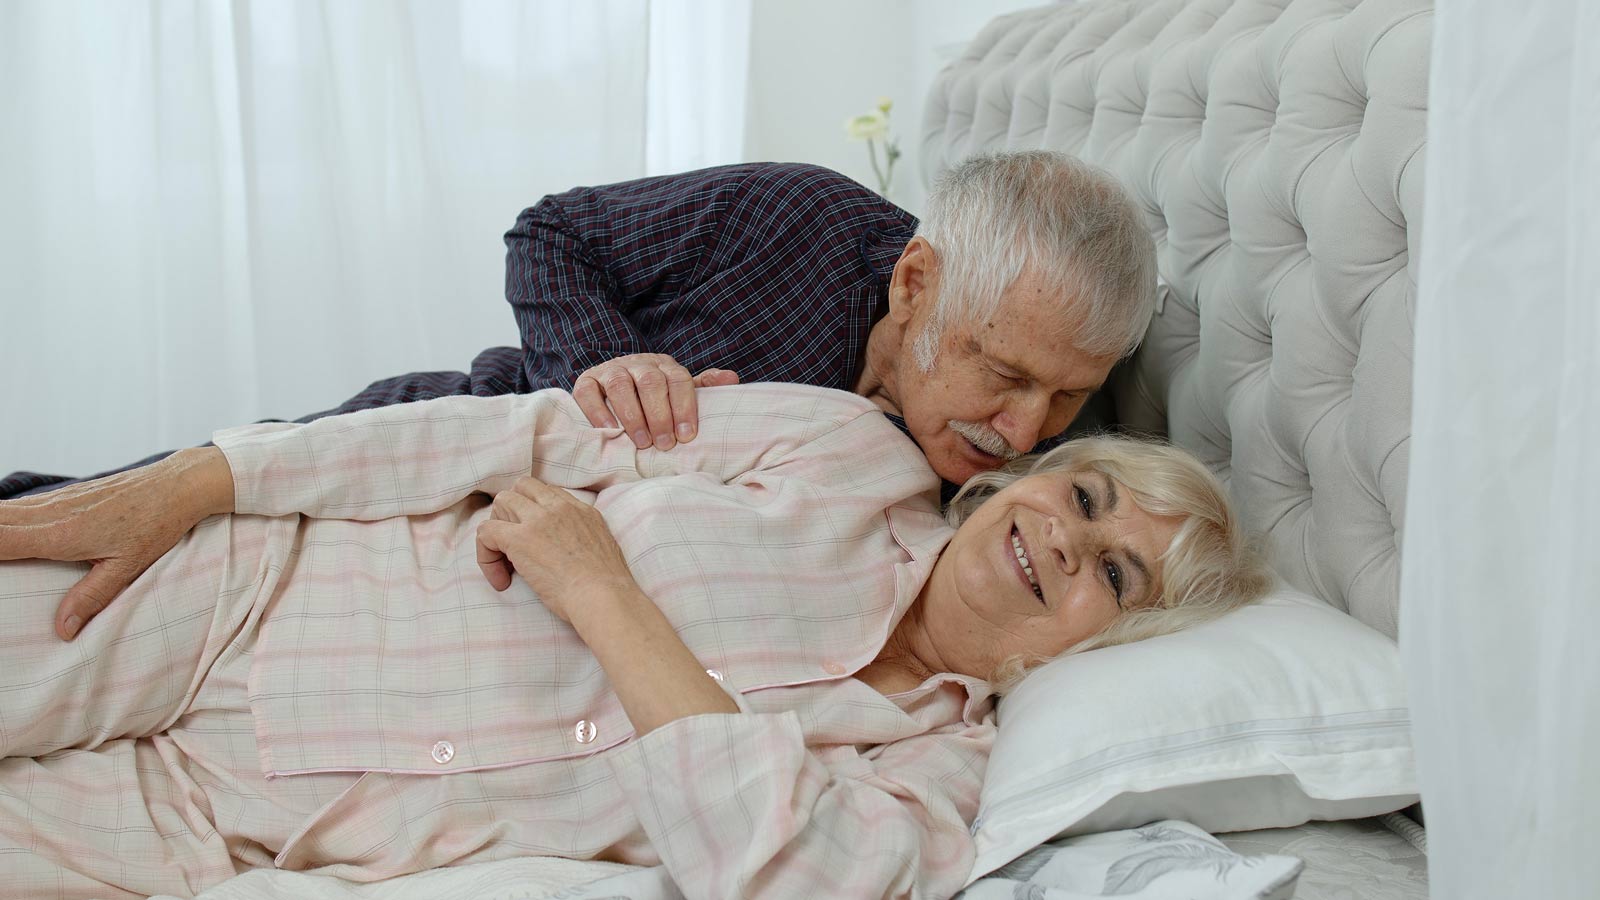 sexual behavior in elderly married couples